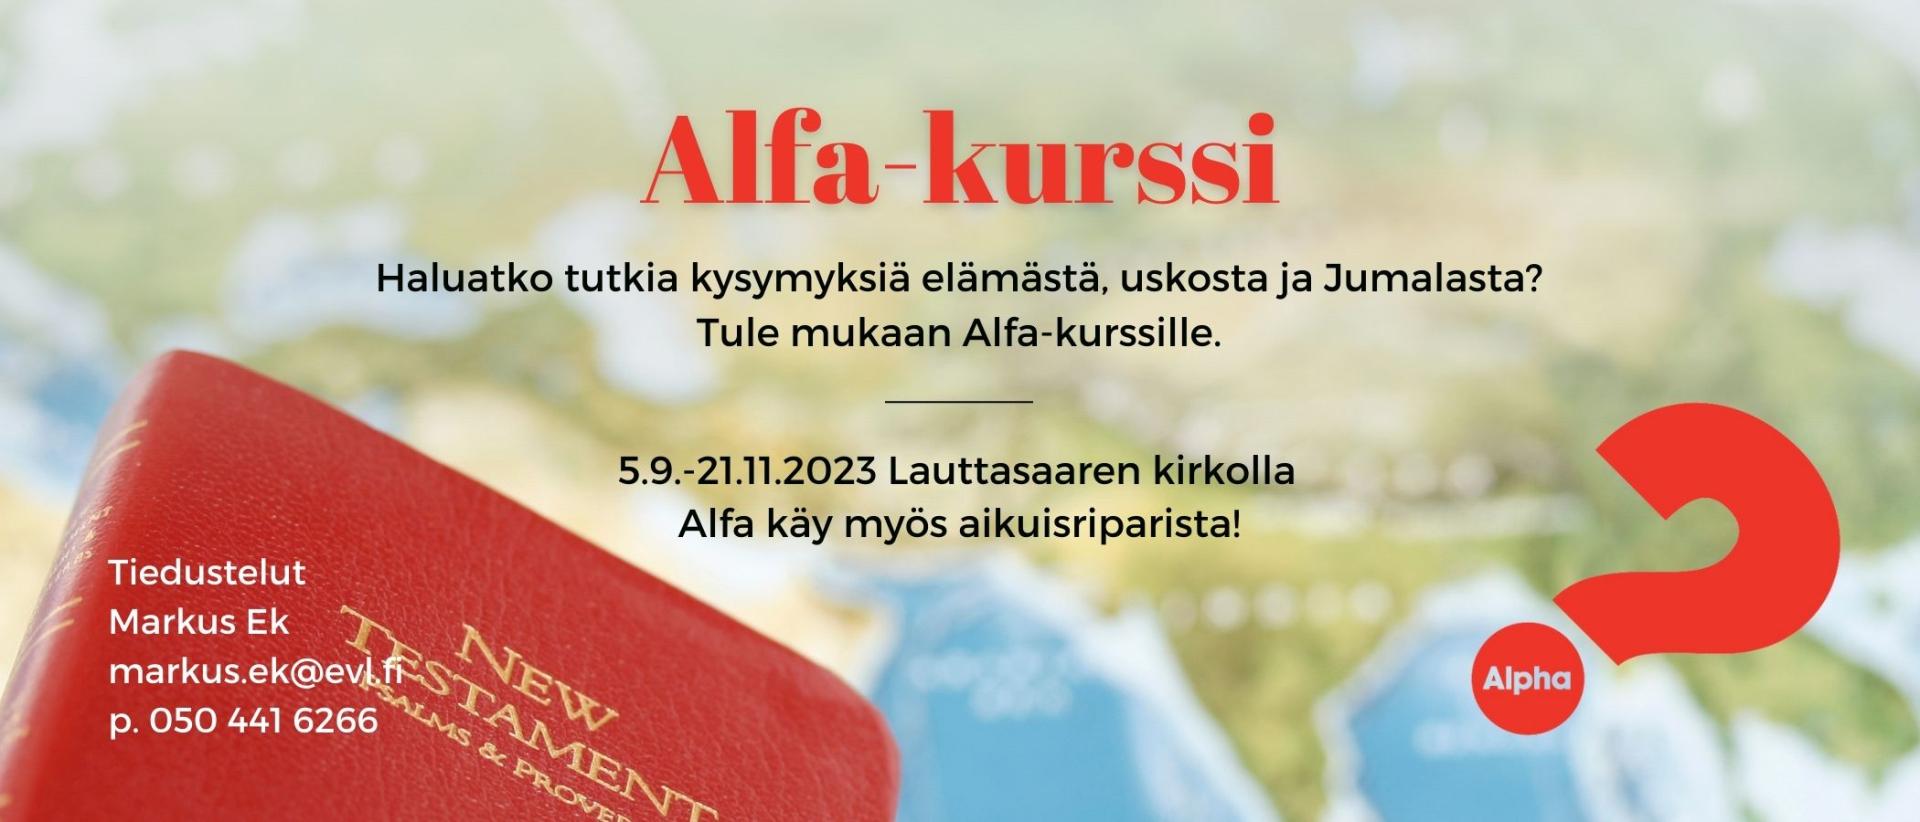 Alfa-kurssi starttaa Lauttasaaressa